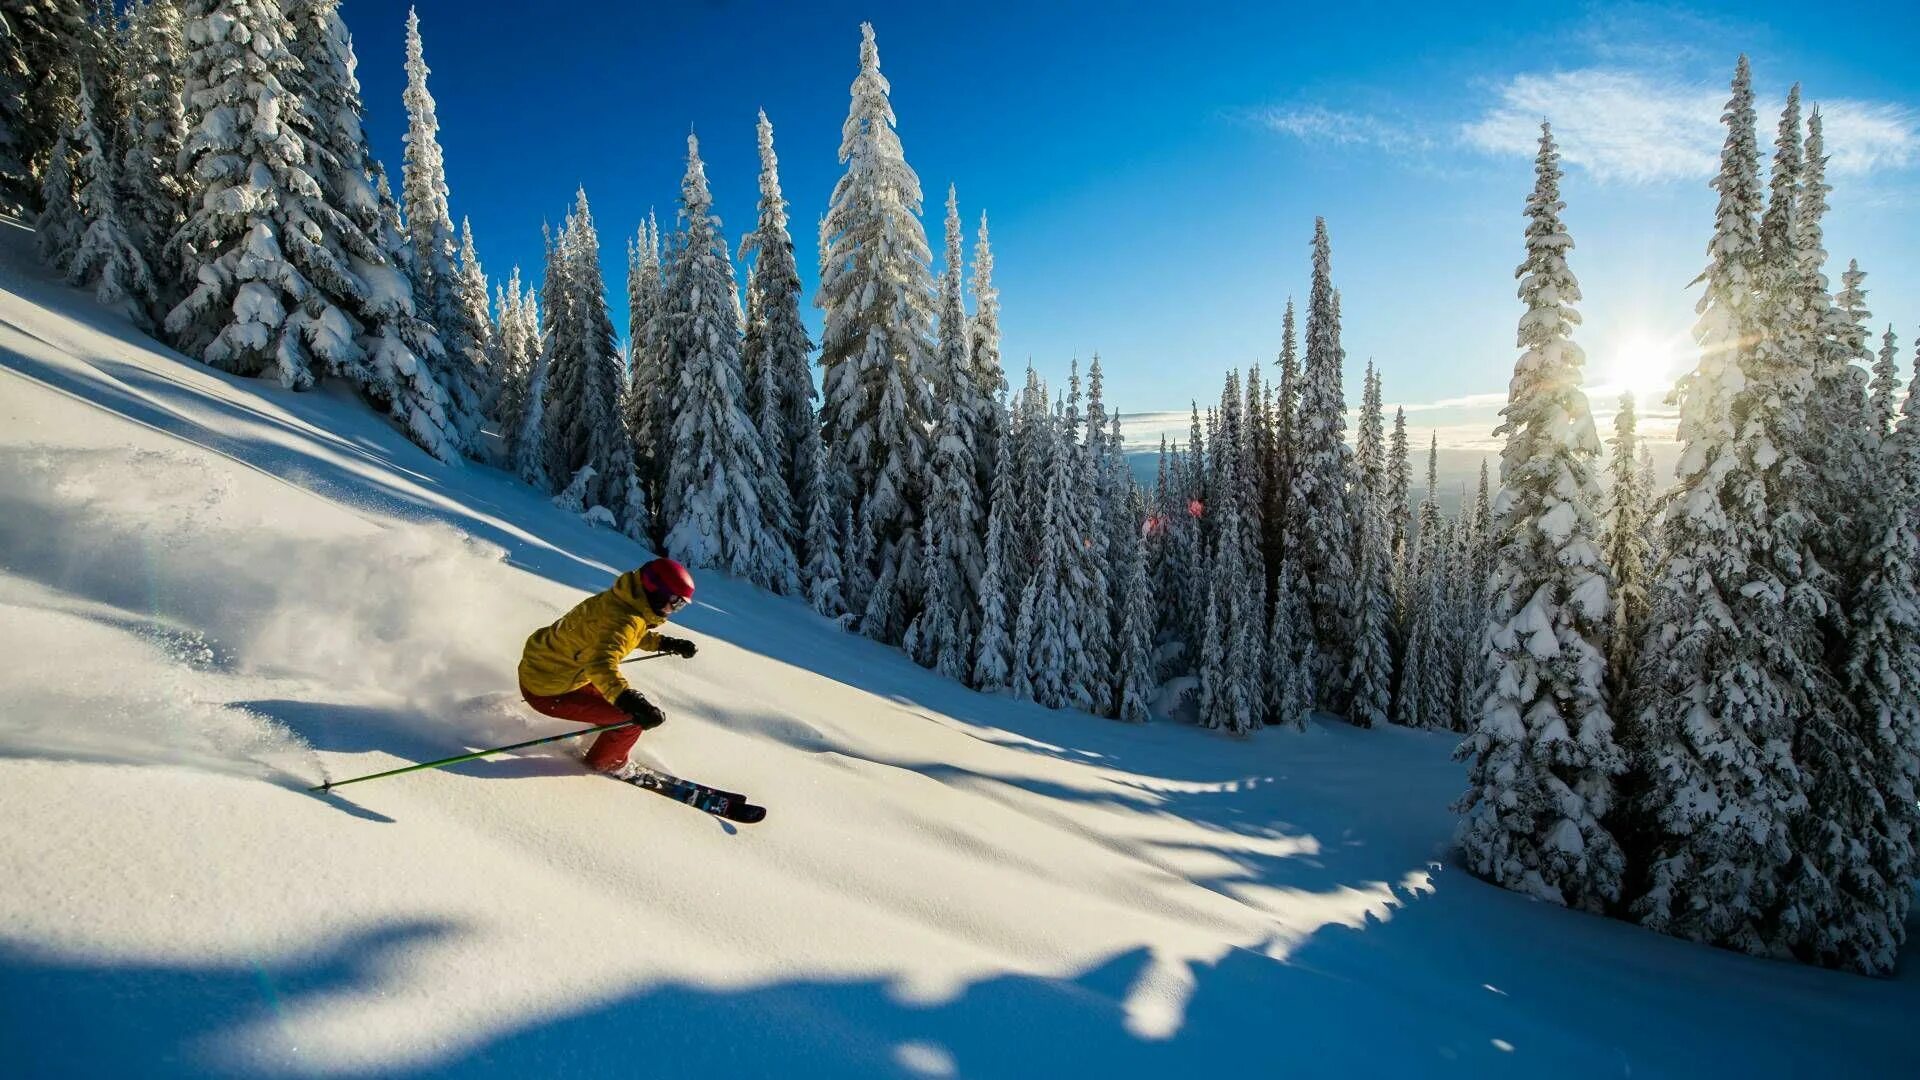 Skiing holiday. Горнолыжные курорты Канады. Ski Holiday. Ревелсток Канада горнолыжный курорт.